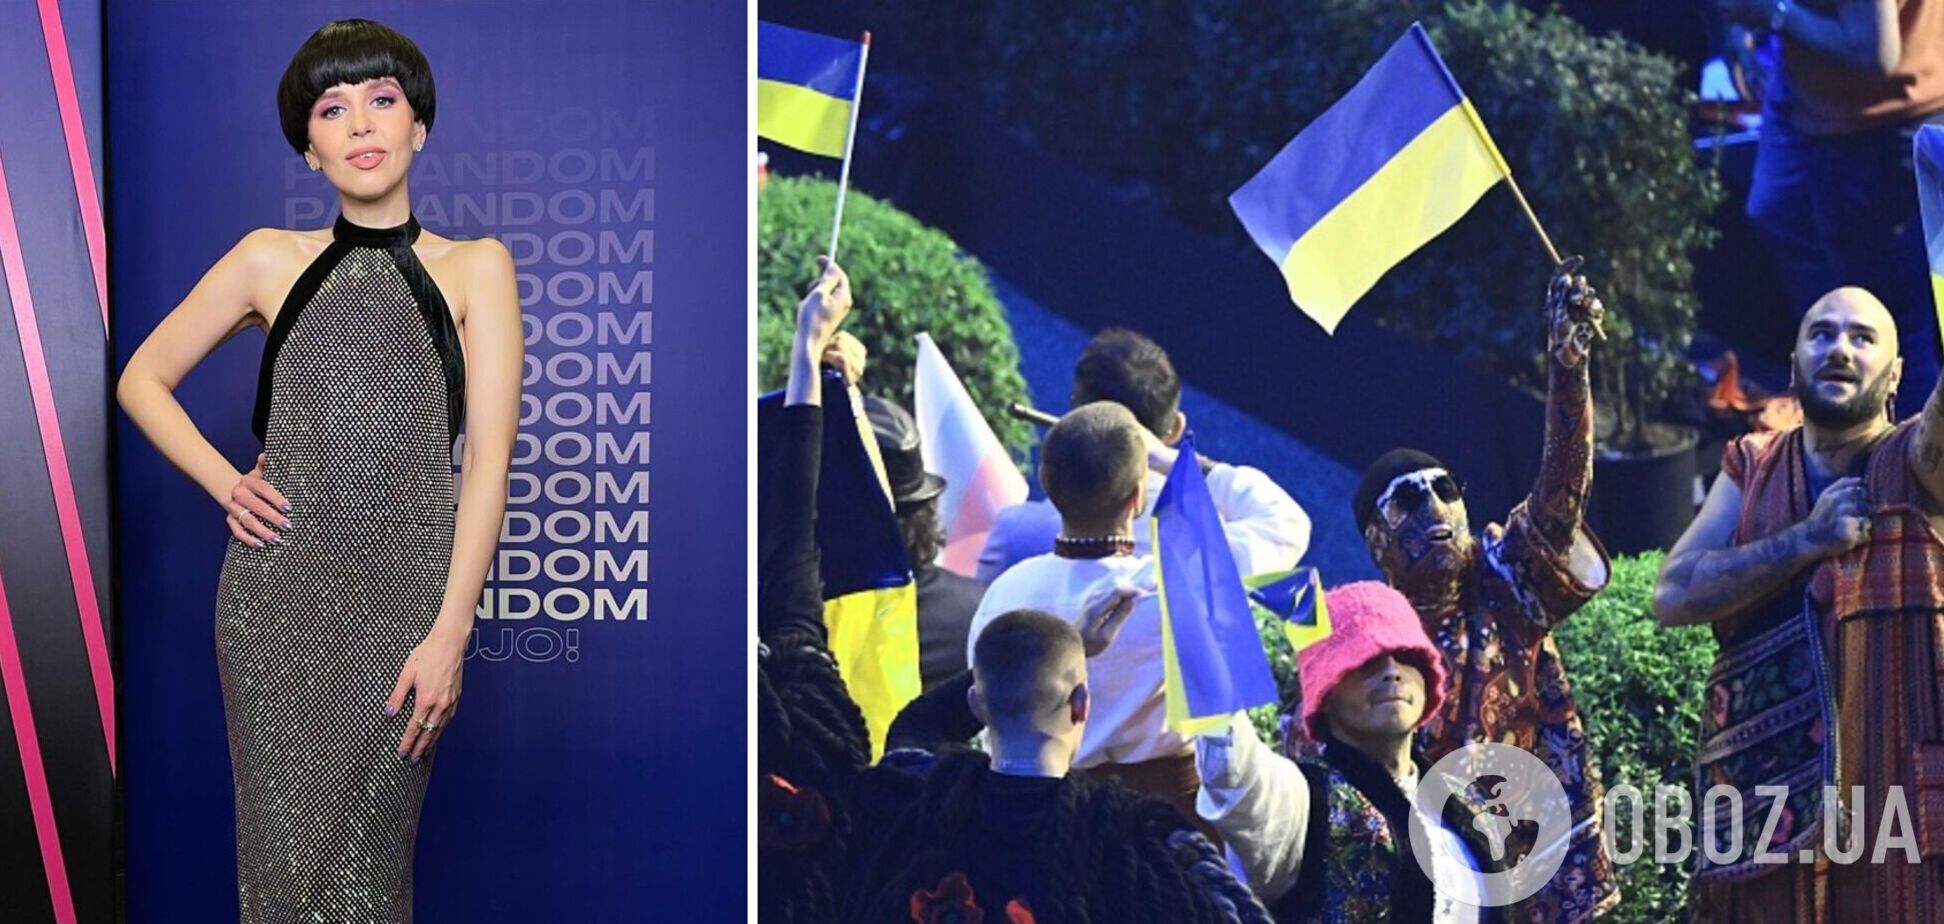 Участница Евровидения от Литвы в прямом эфире выкрикнула 'Слава Украине!' и призвала помогать украинцам